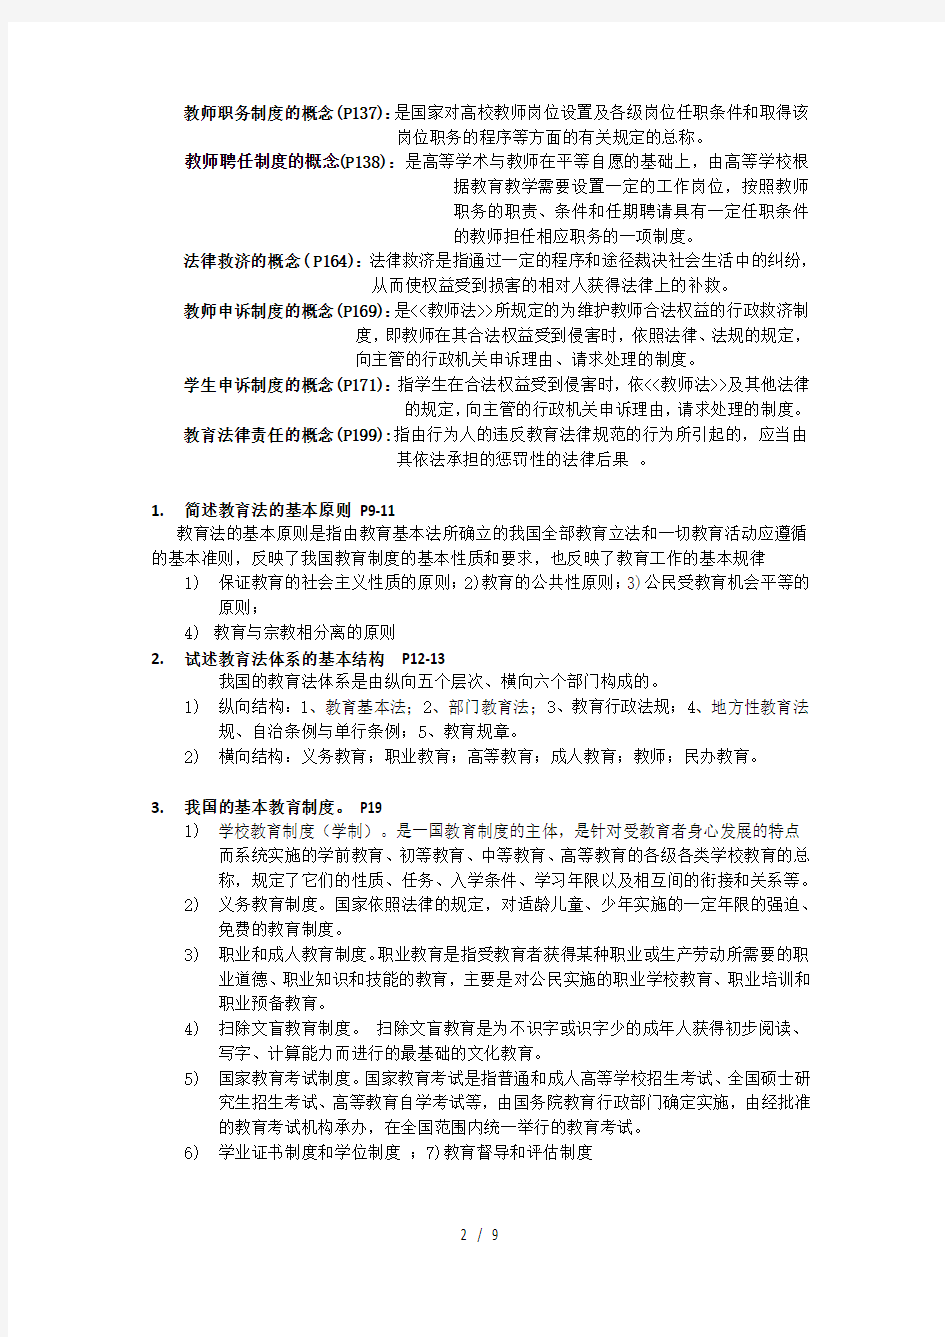 北京高校教师岗前培训考试试题参考材料高等教育法规